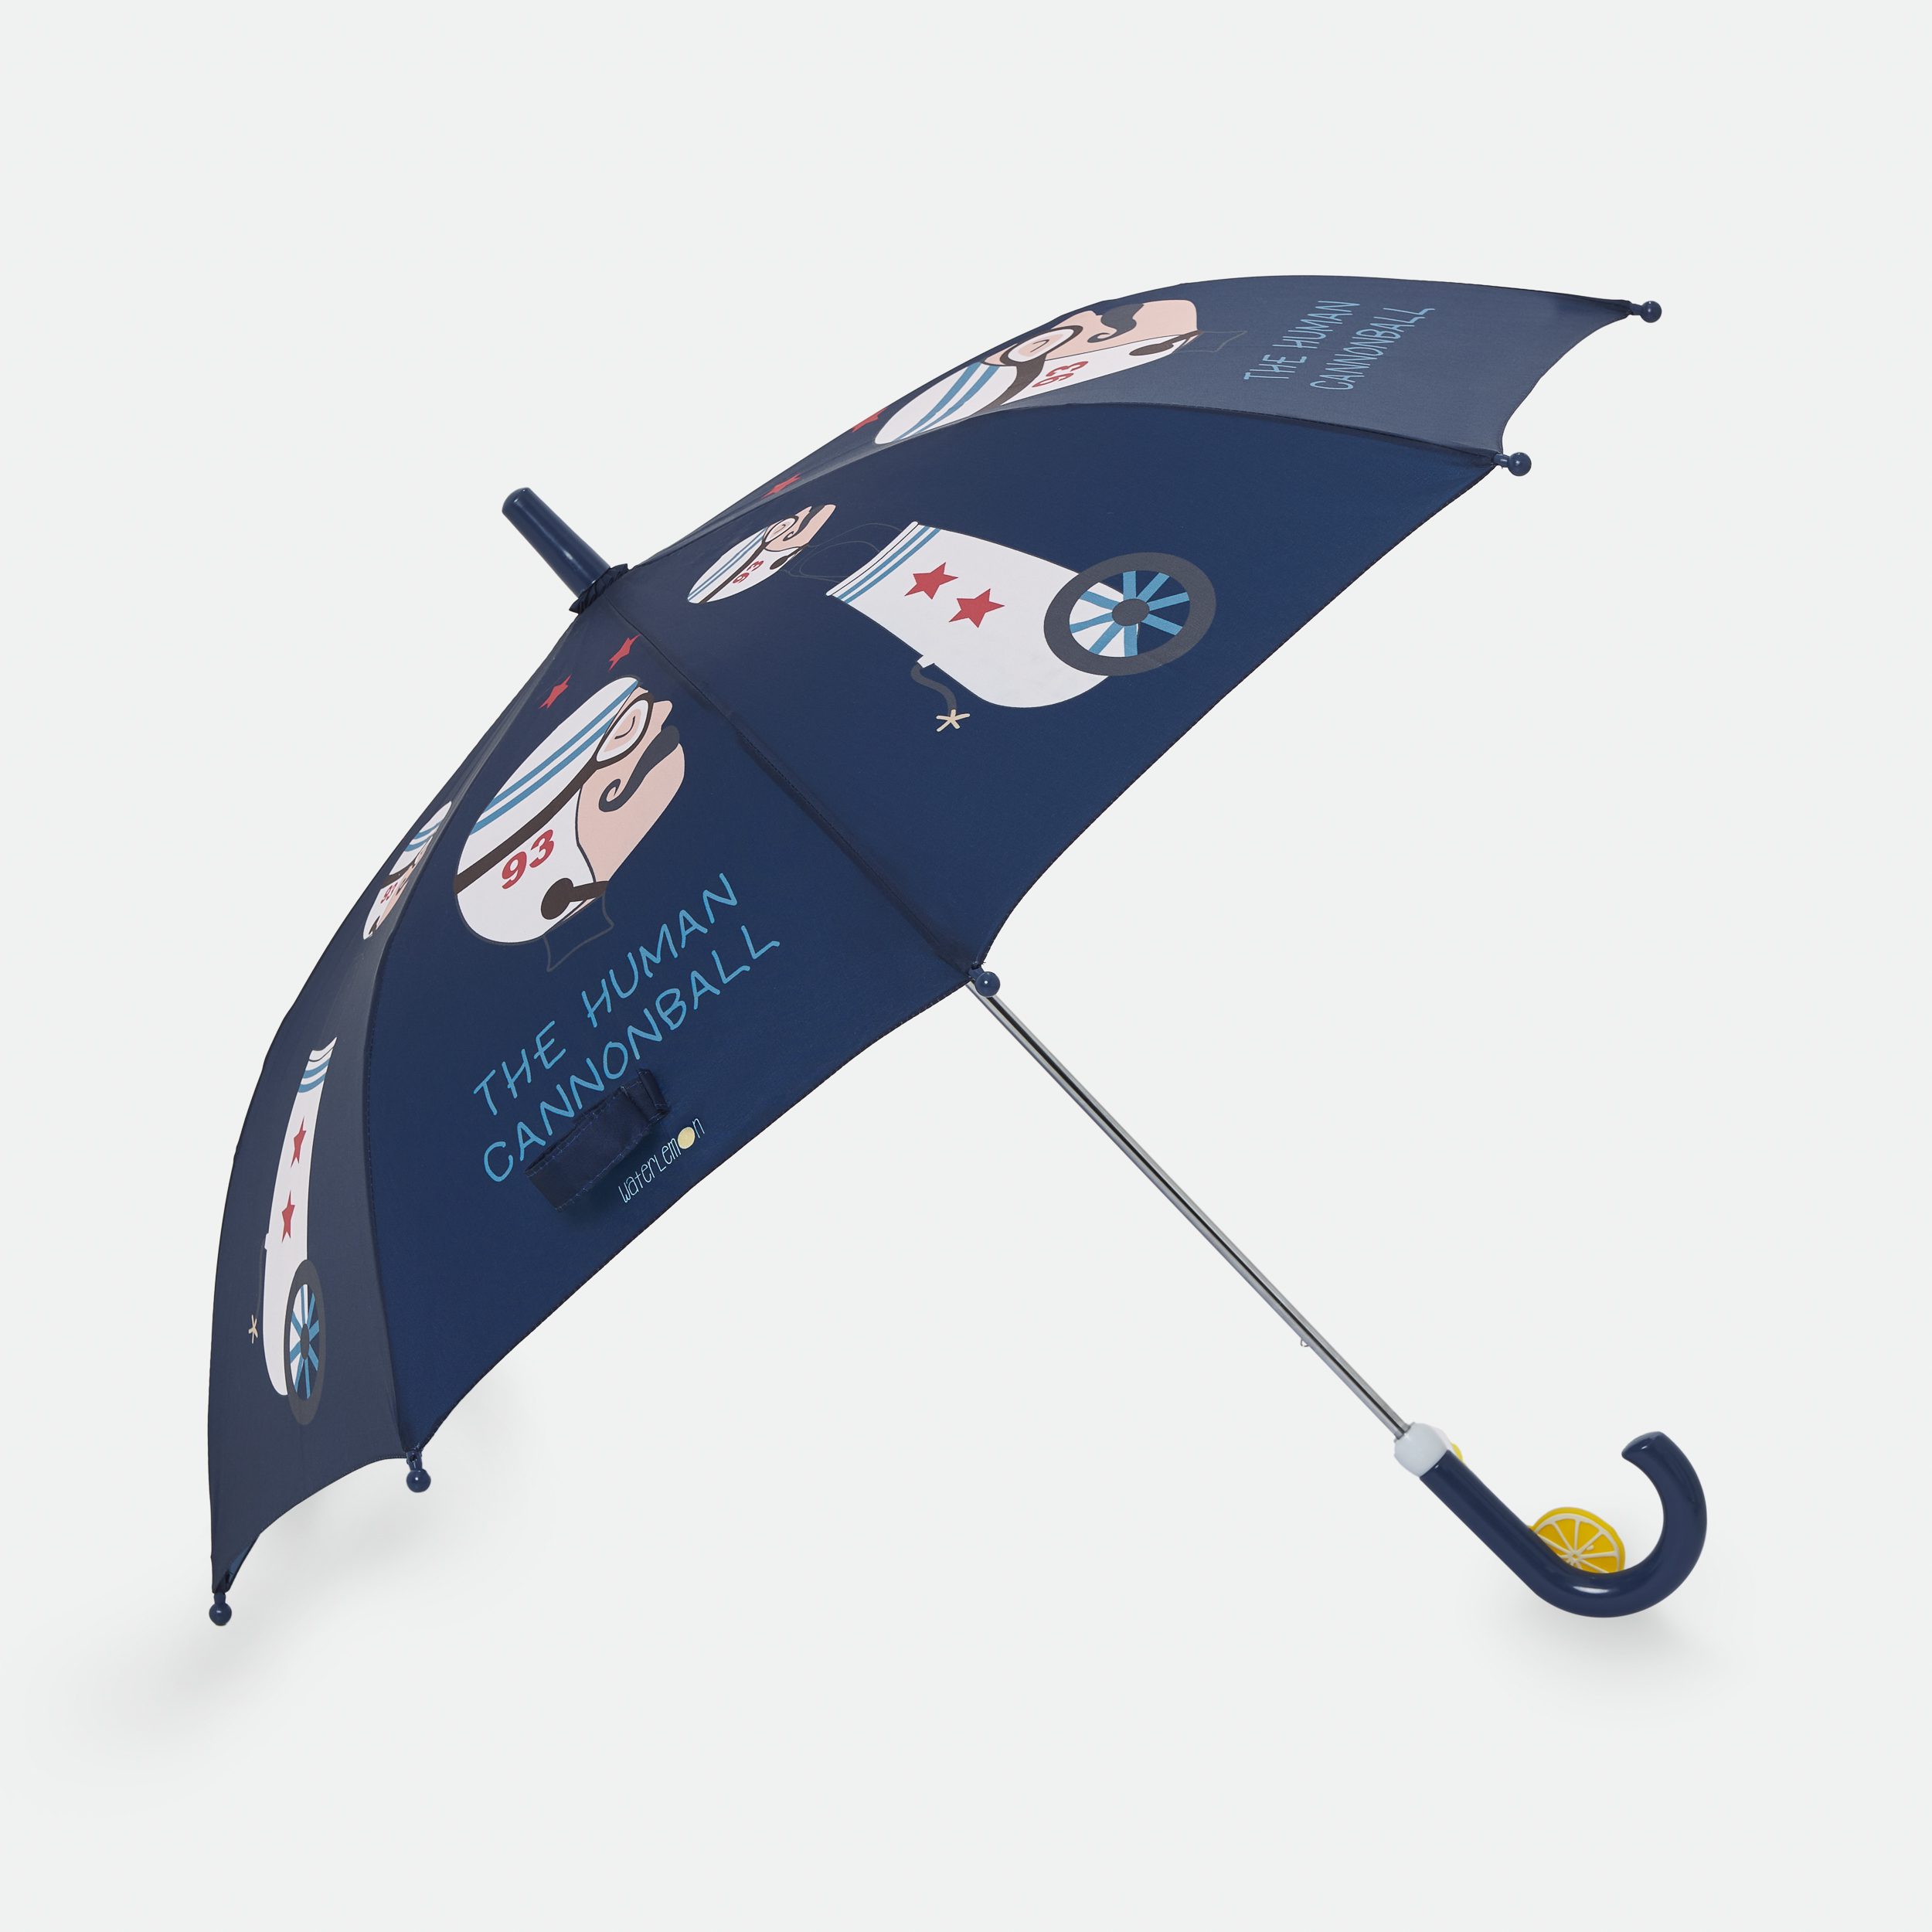   Paraguas inf waterlemon 3701 